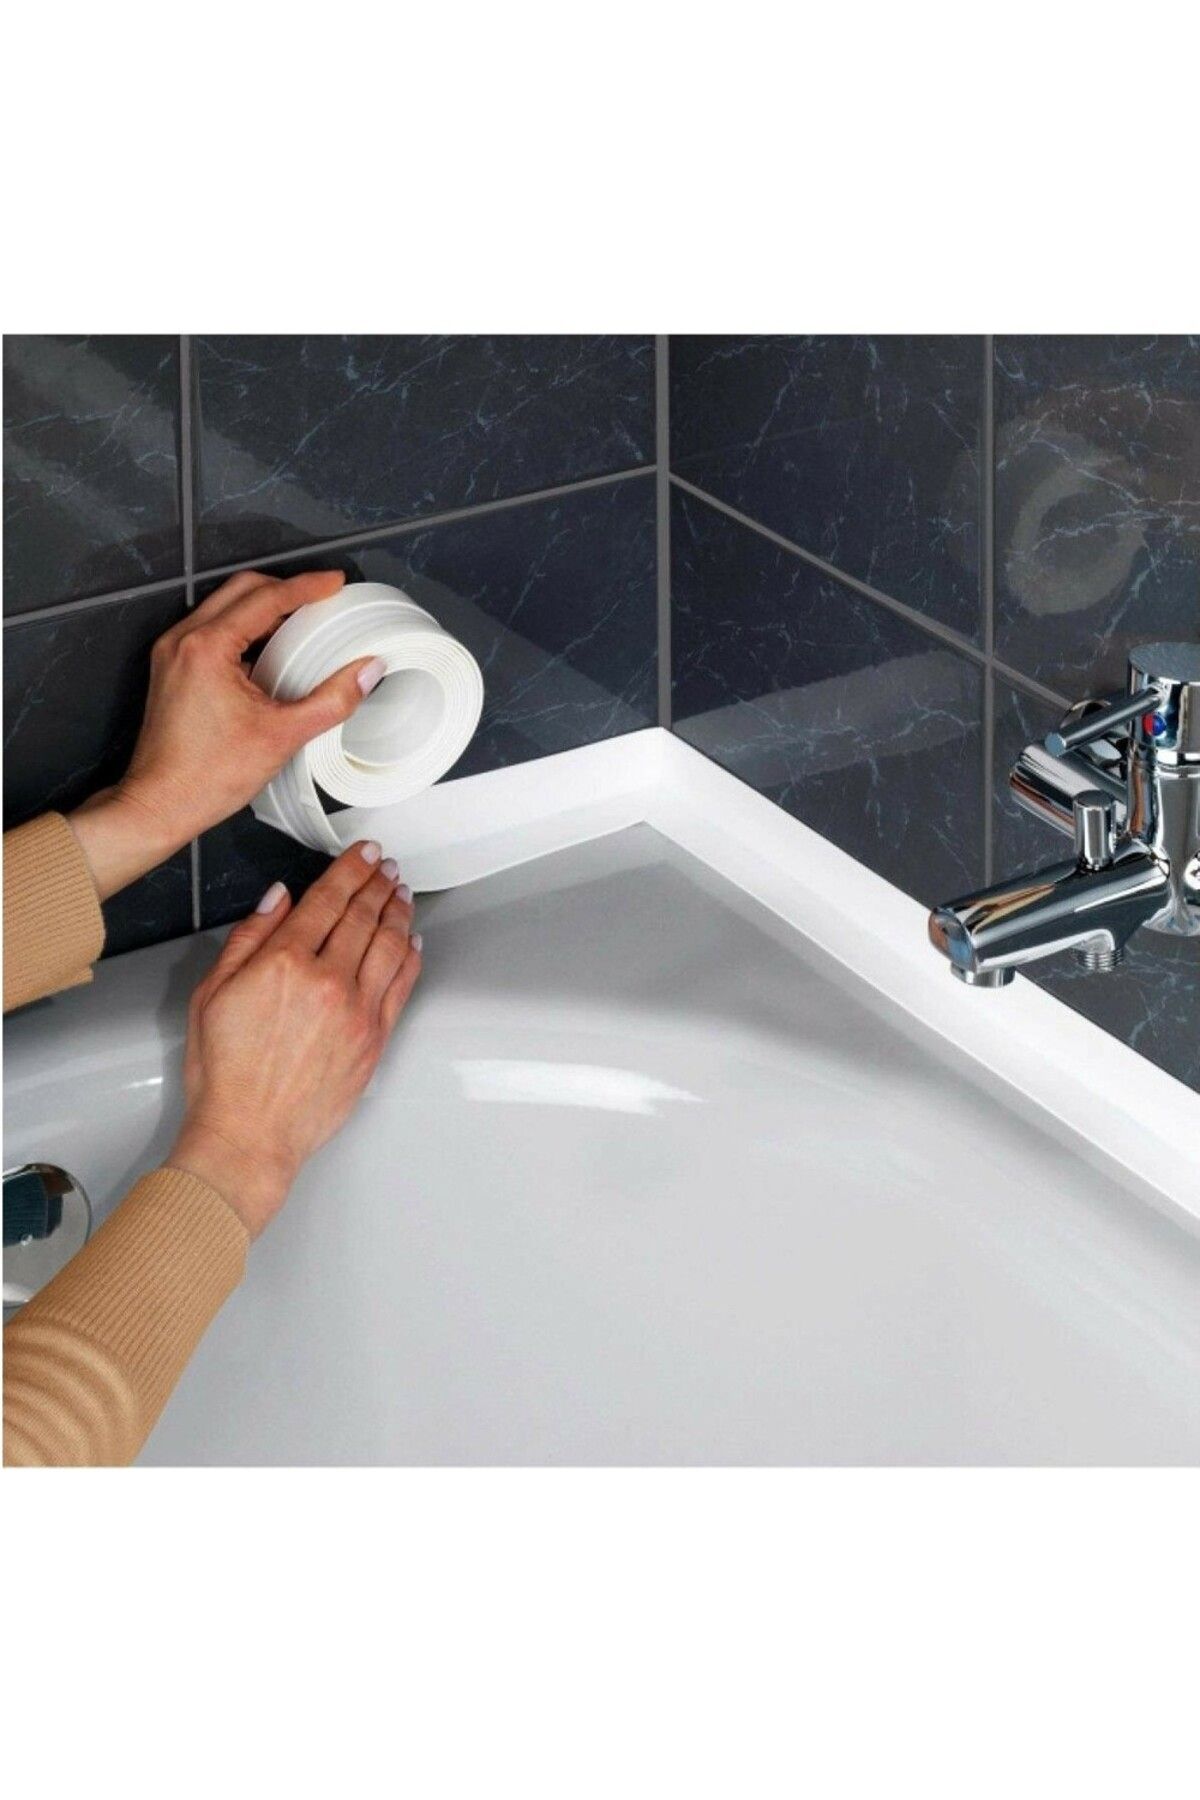 Sturdy 3.2 M Banyo Küvet Mutfak Lavabo Beyaz Su Sızdırmaz Bant Su Geçirmez Kenar Bandı Sızdırmazlık